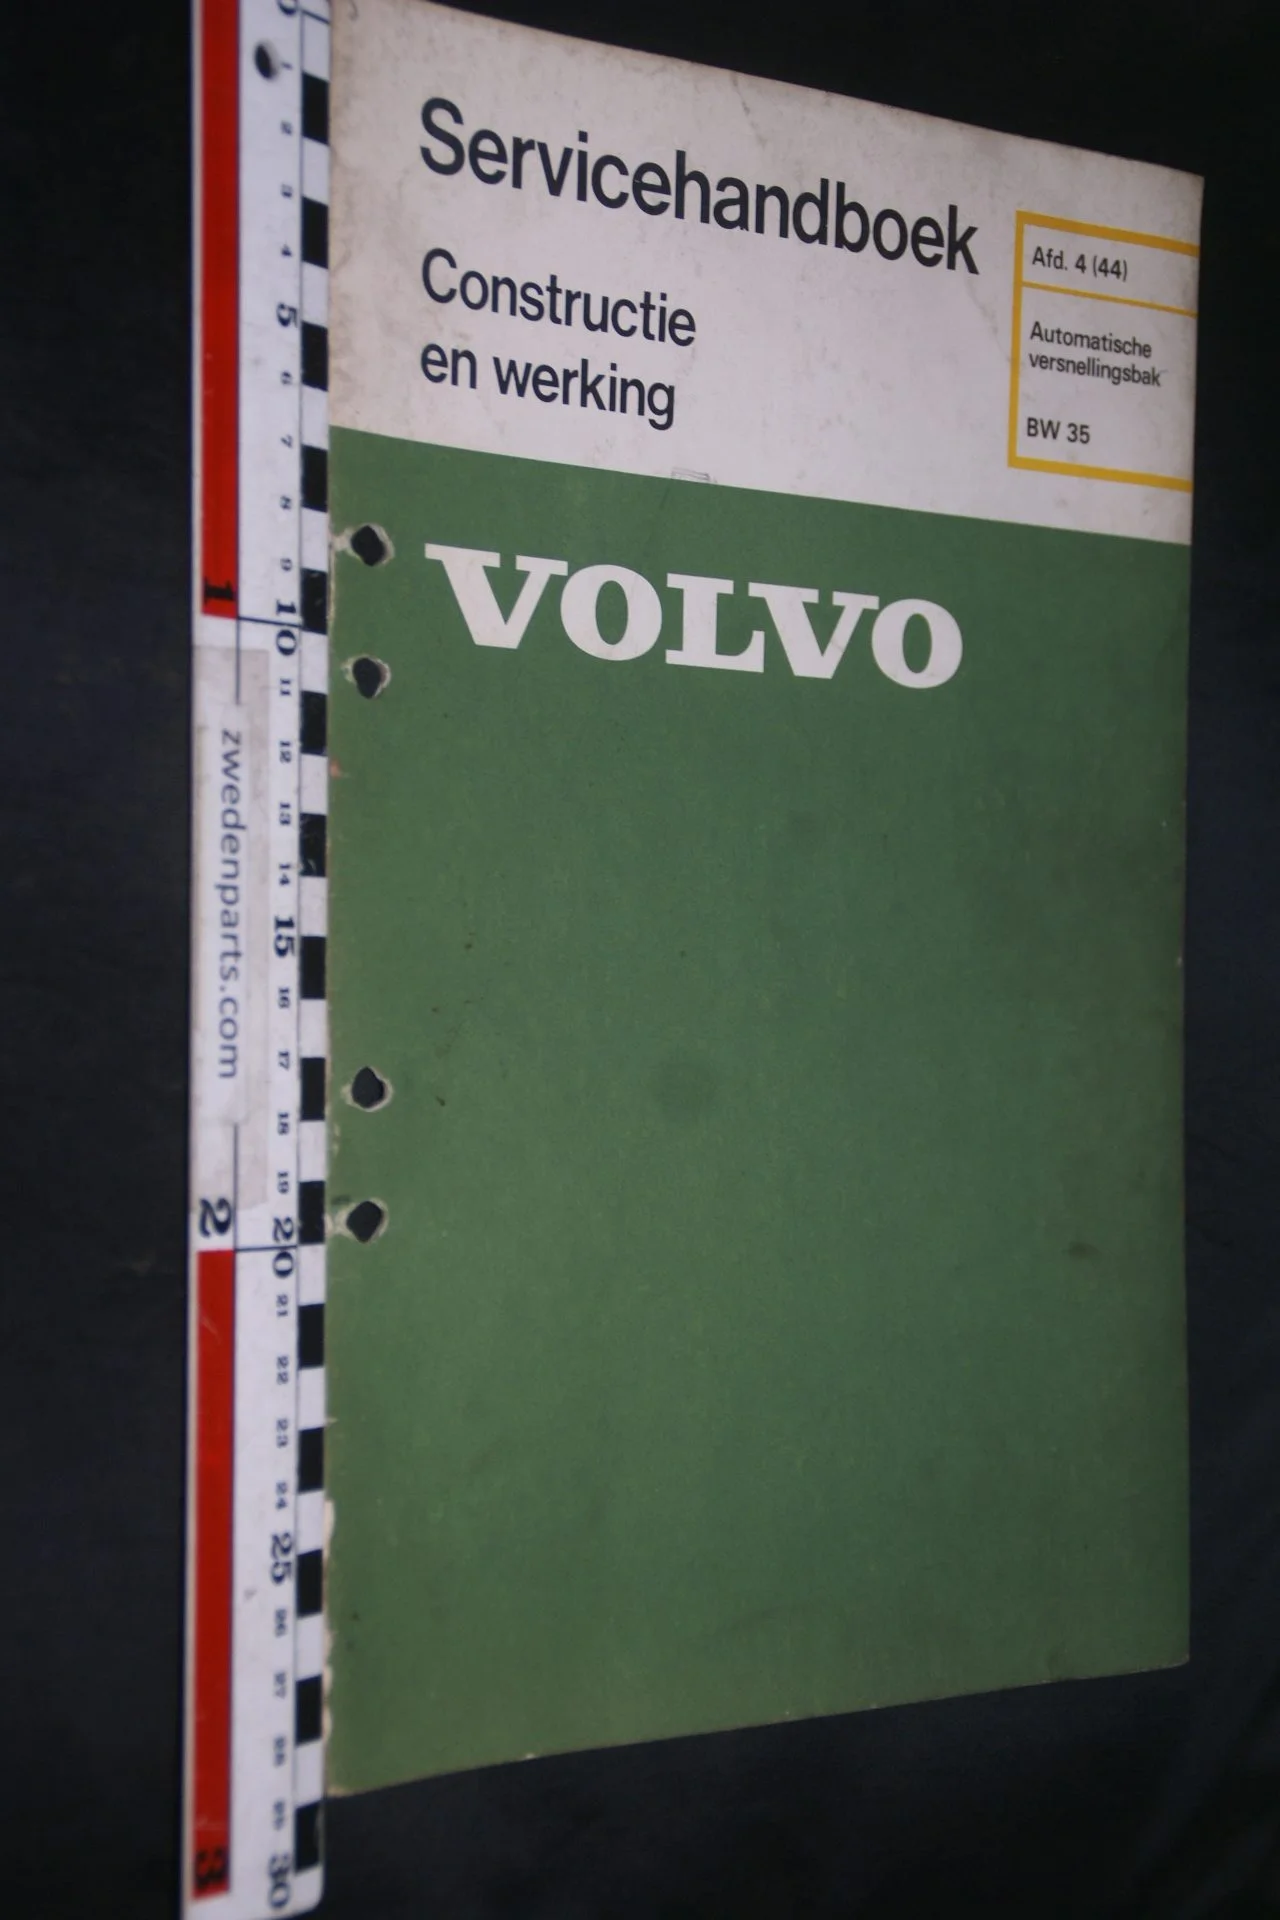 DSC07292 1977 origineel Volvo servicehandboek  4(44) automatische versnellingsbak BW35 1 van 750 TP 11468-1